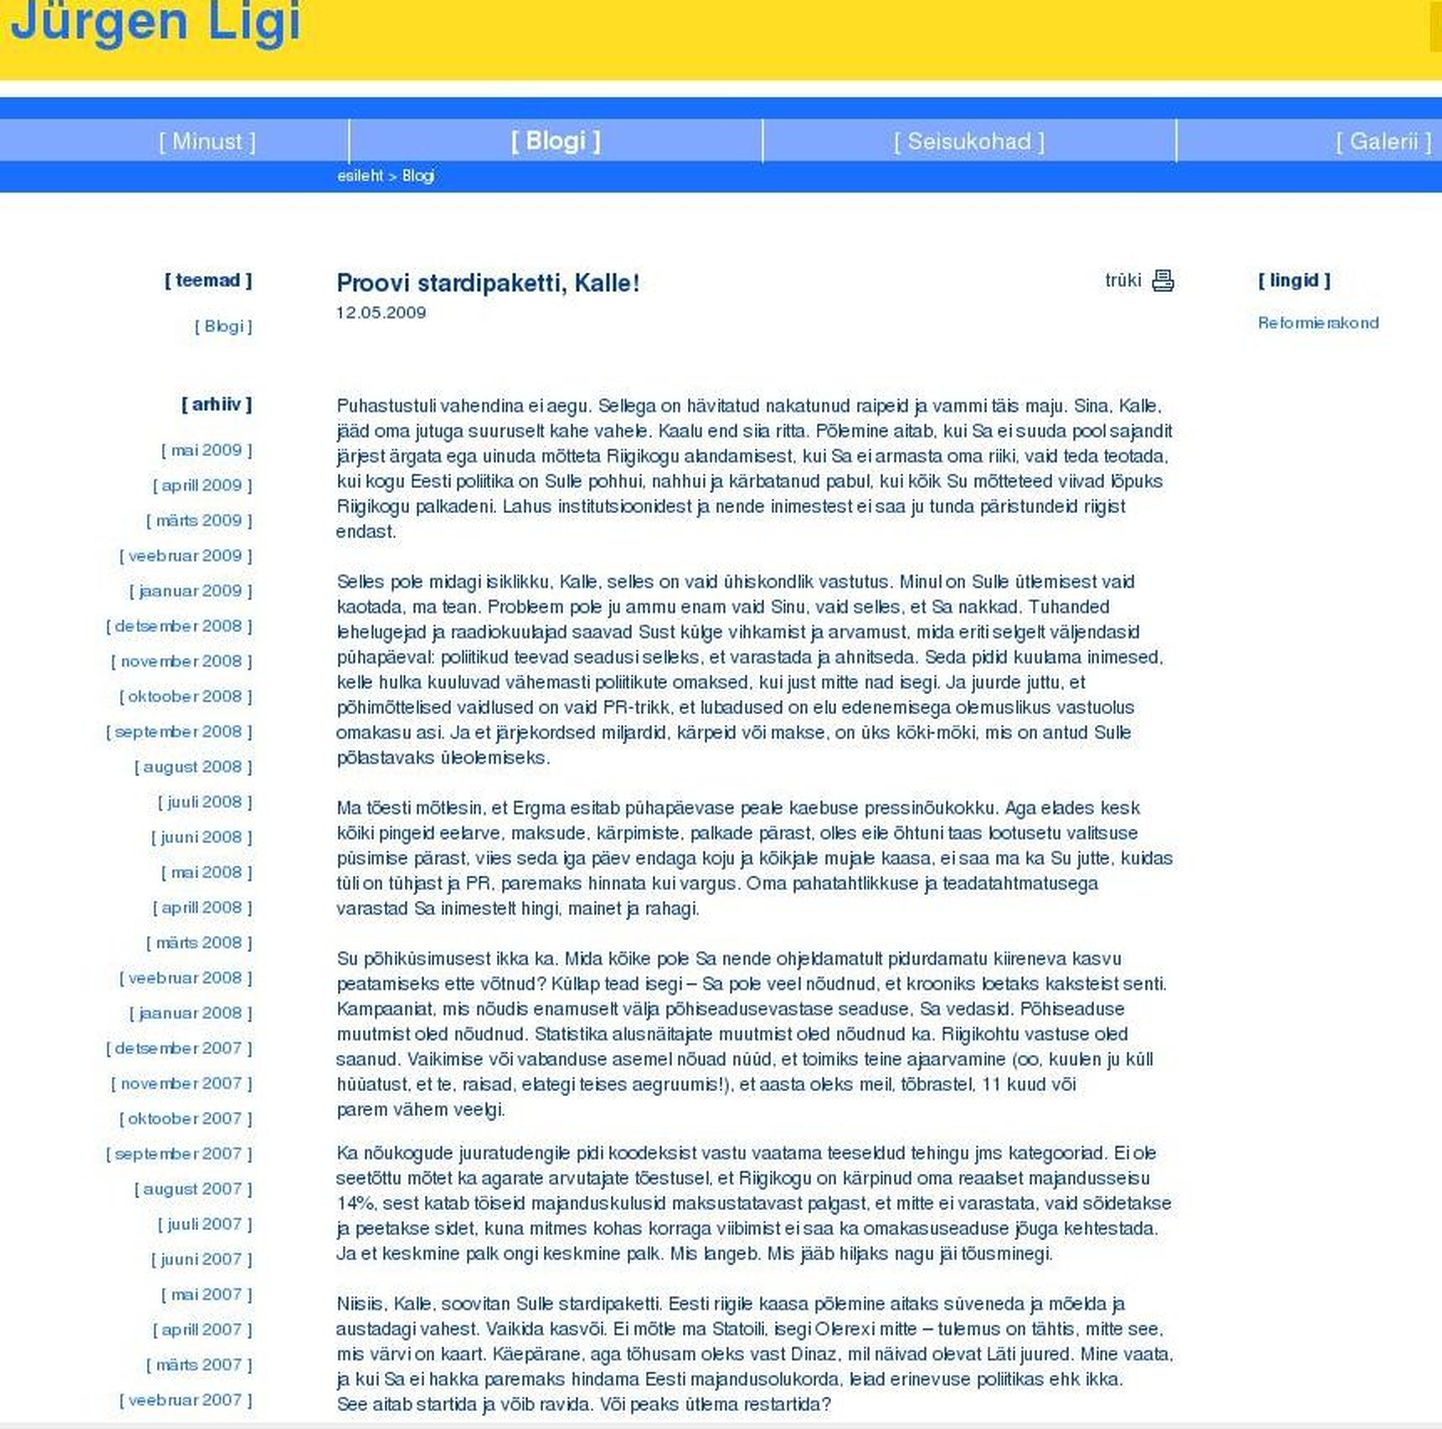 Скриншот скандальной записи Юргена Лиги.